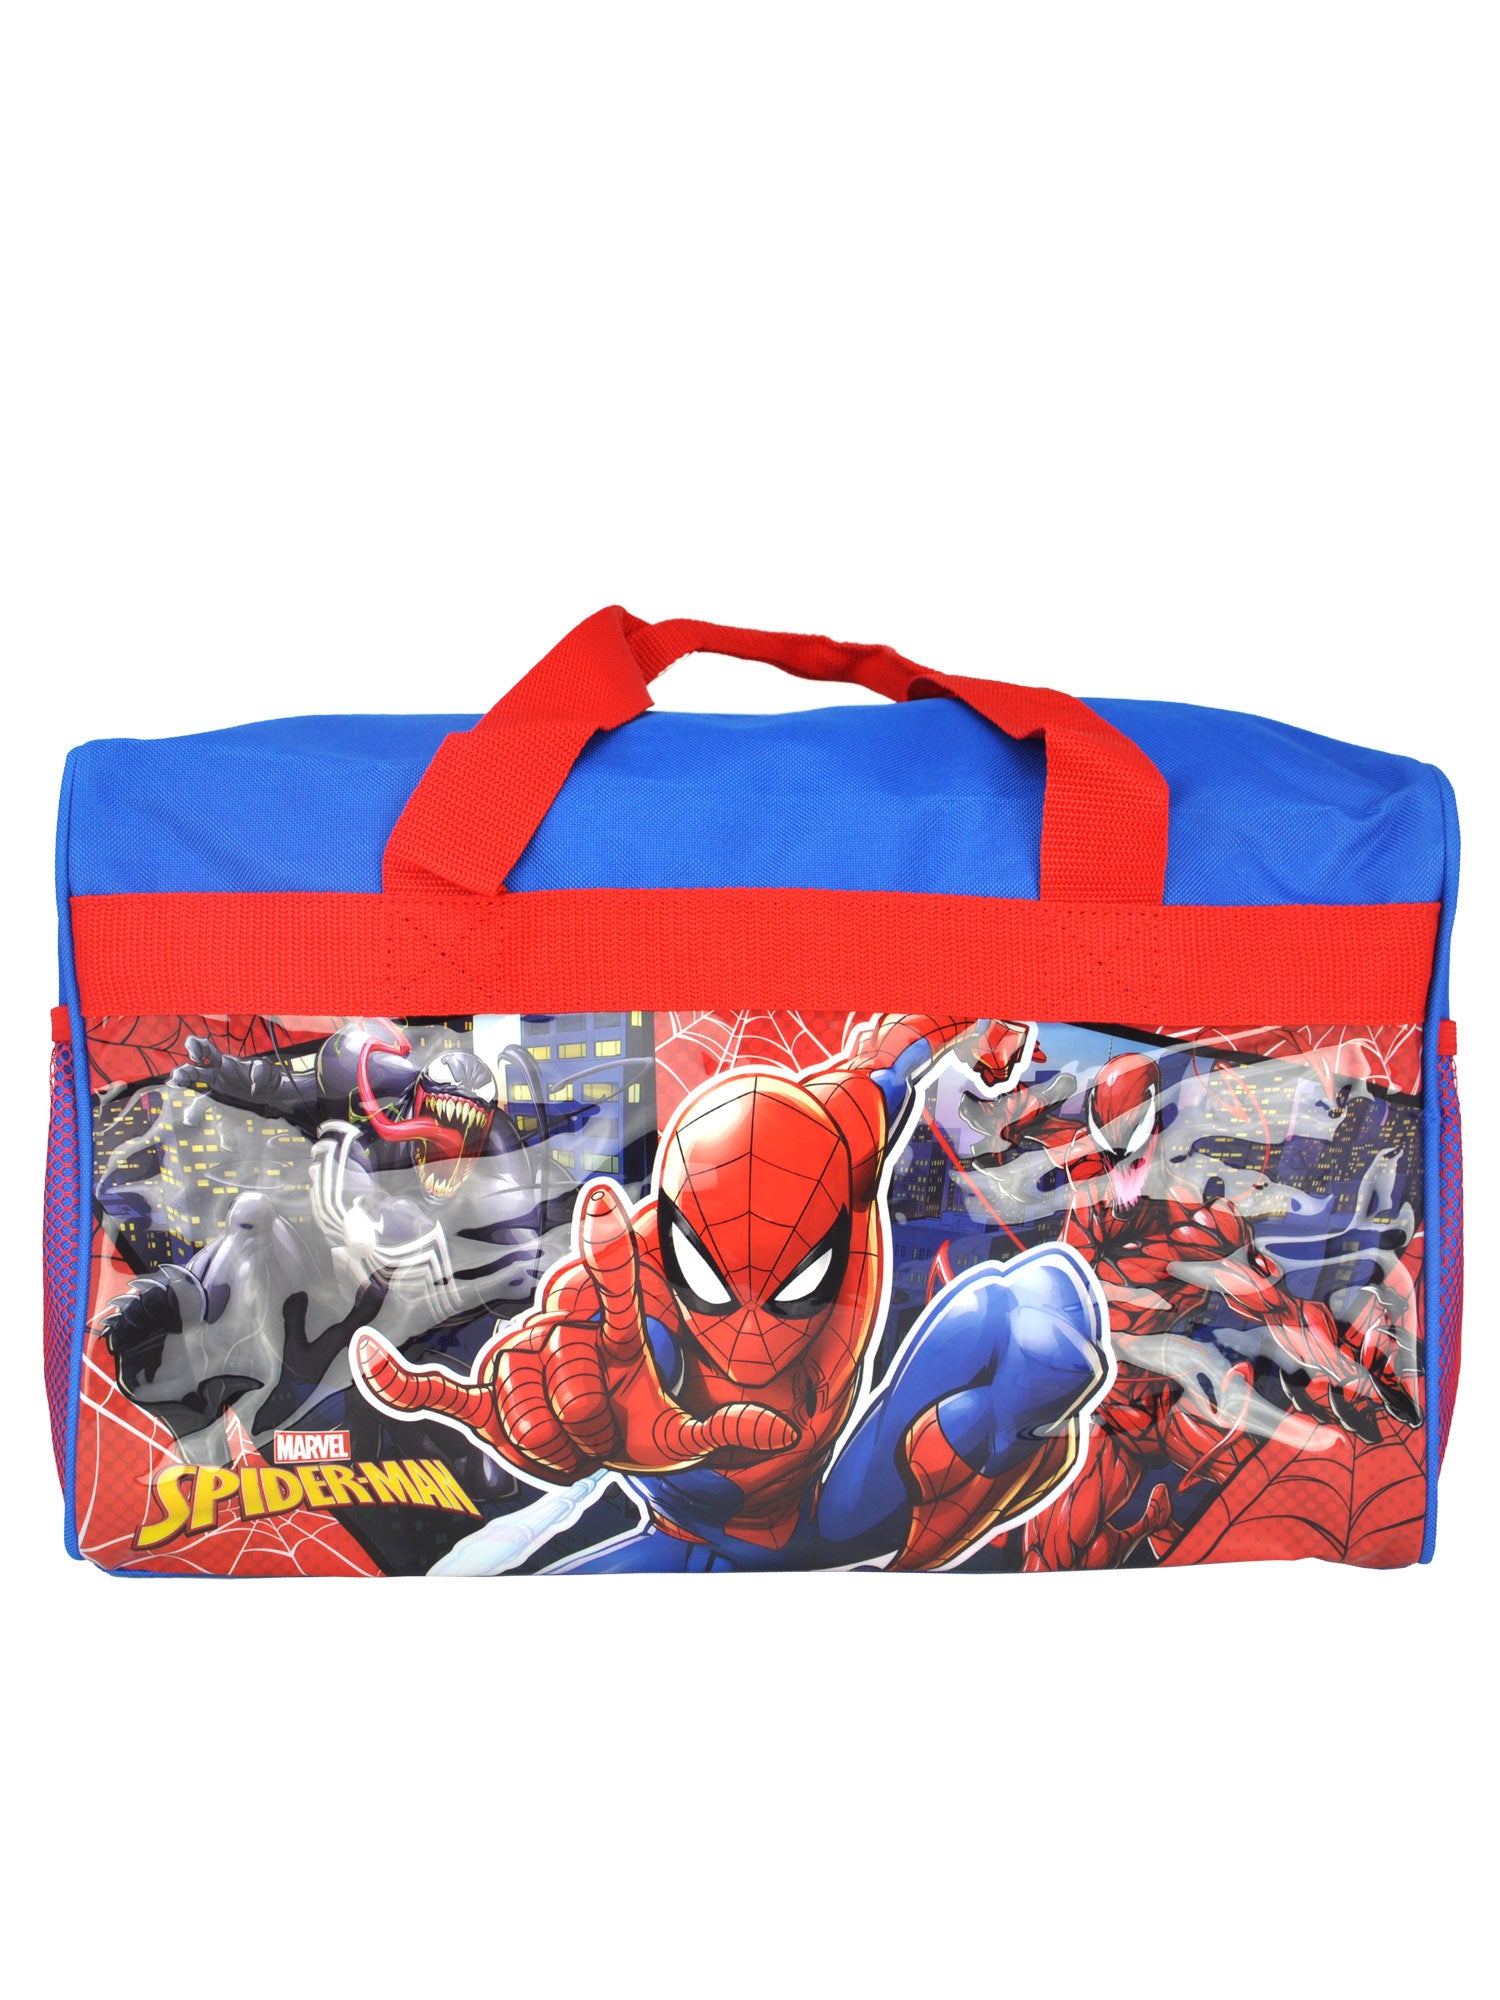 Spider-Man Duffel Bag 17" Carry-On Venom Carnage w/ Marvel Topper Pen Set